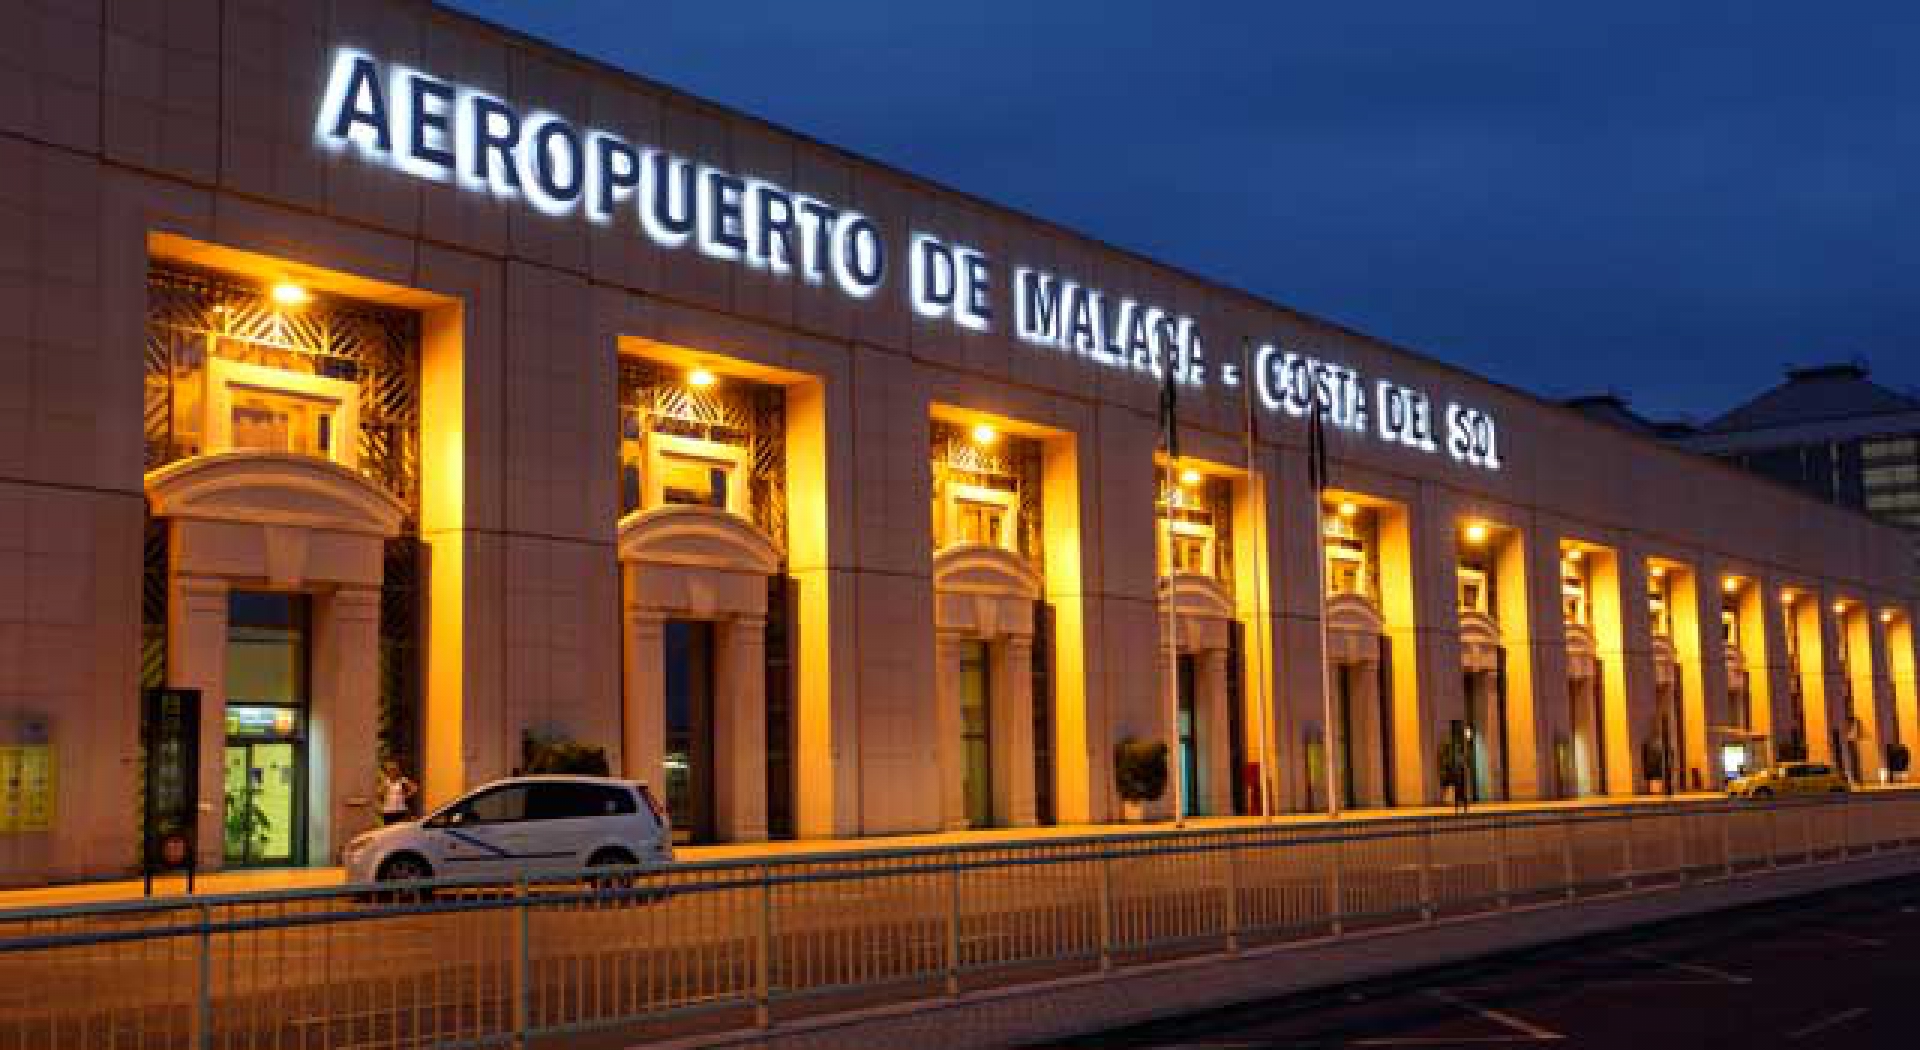 Aeropuerto de Málaga - Costa del Sol